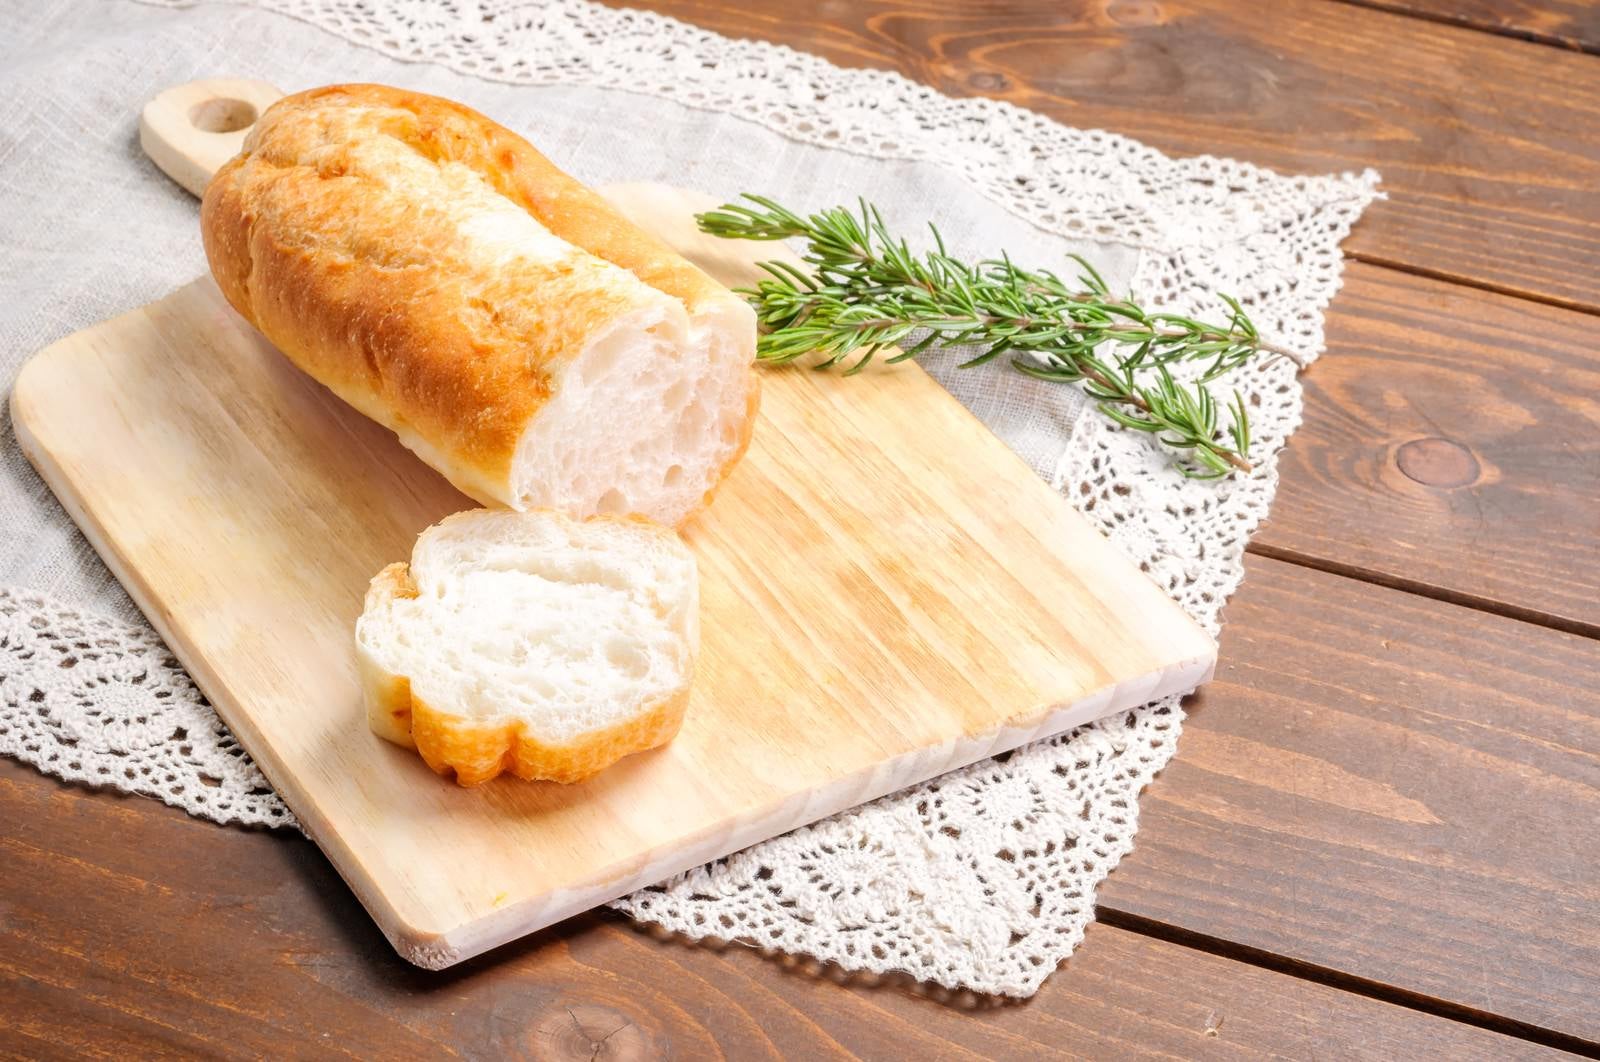 「カットされたフランスパン」の写真